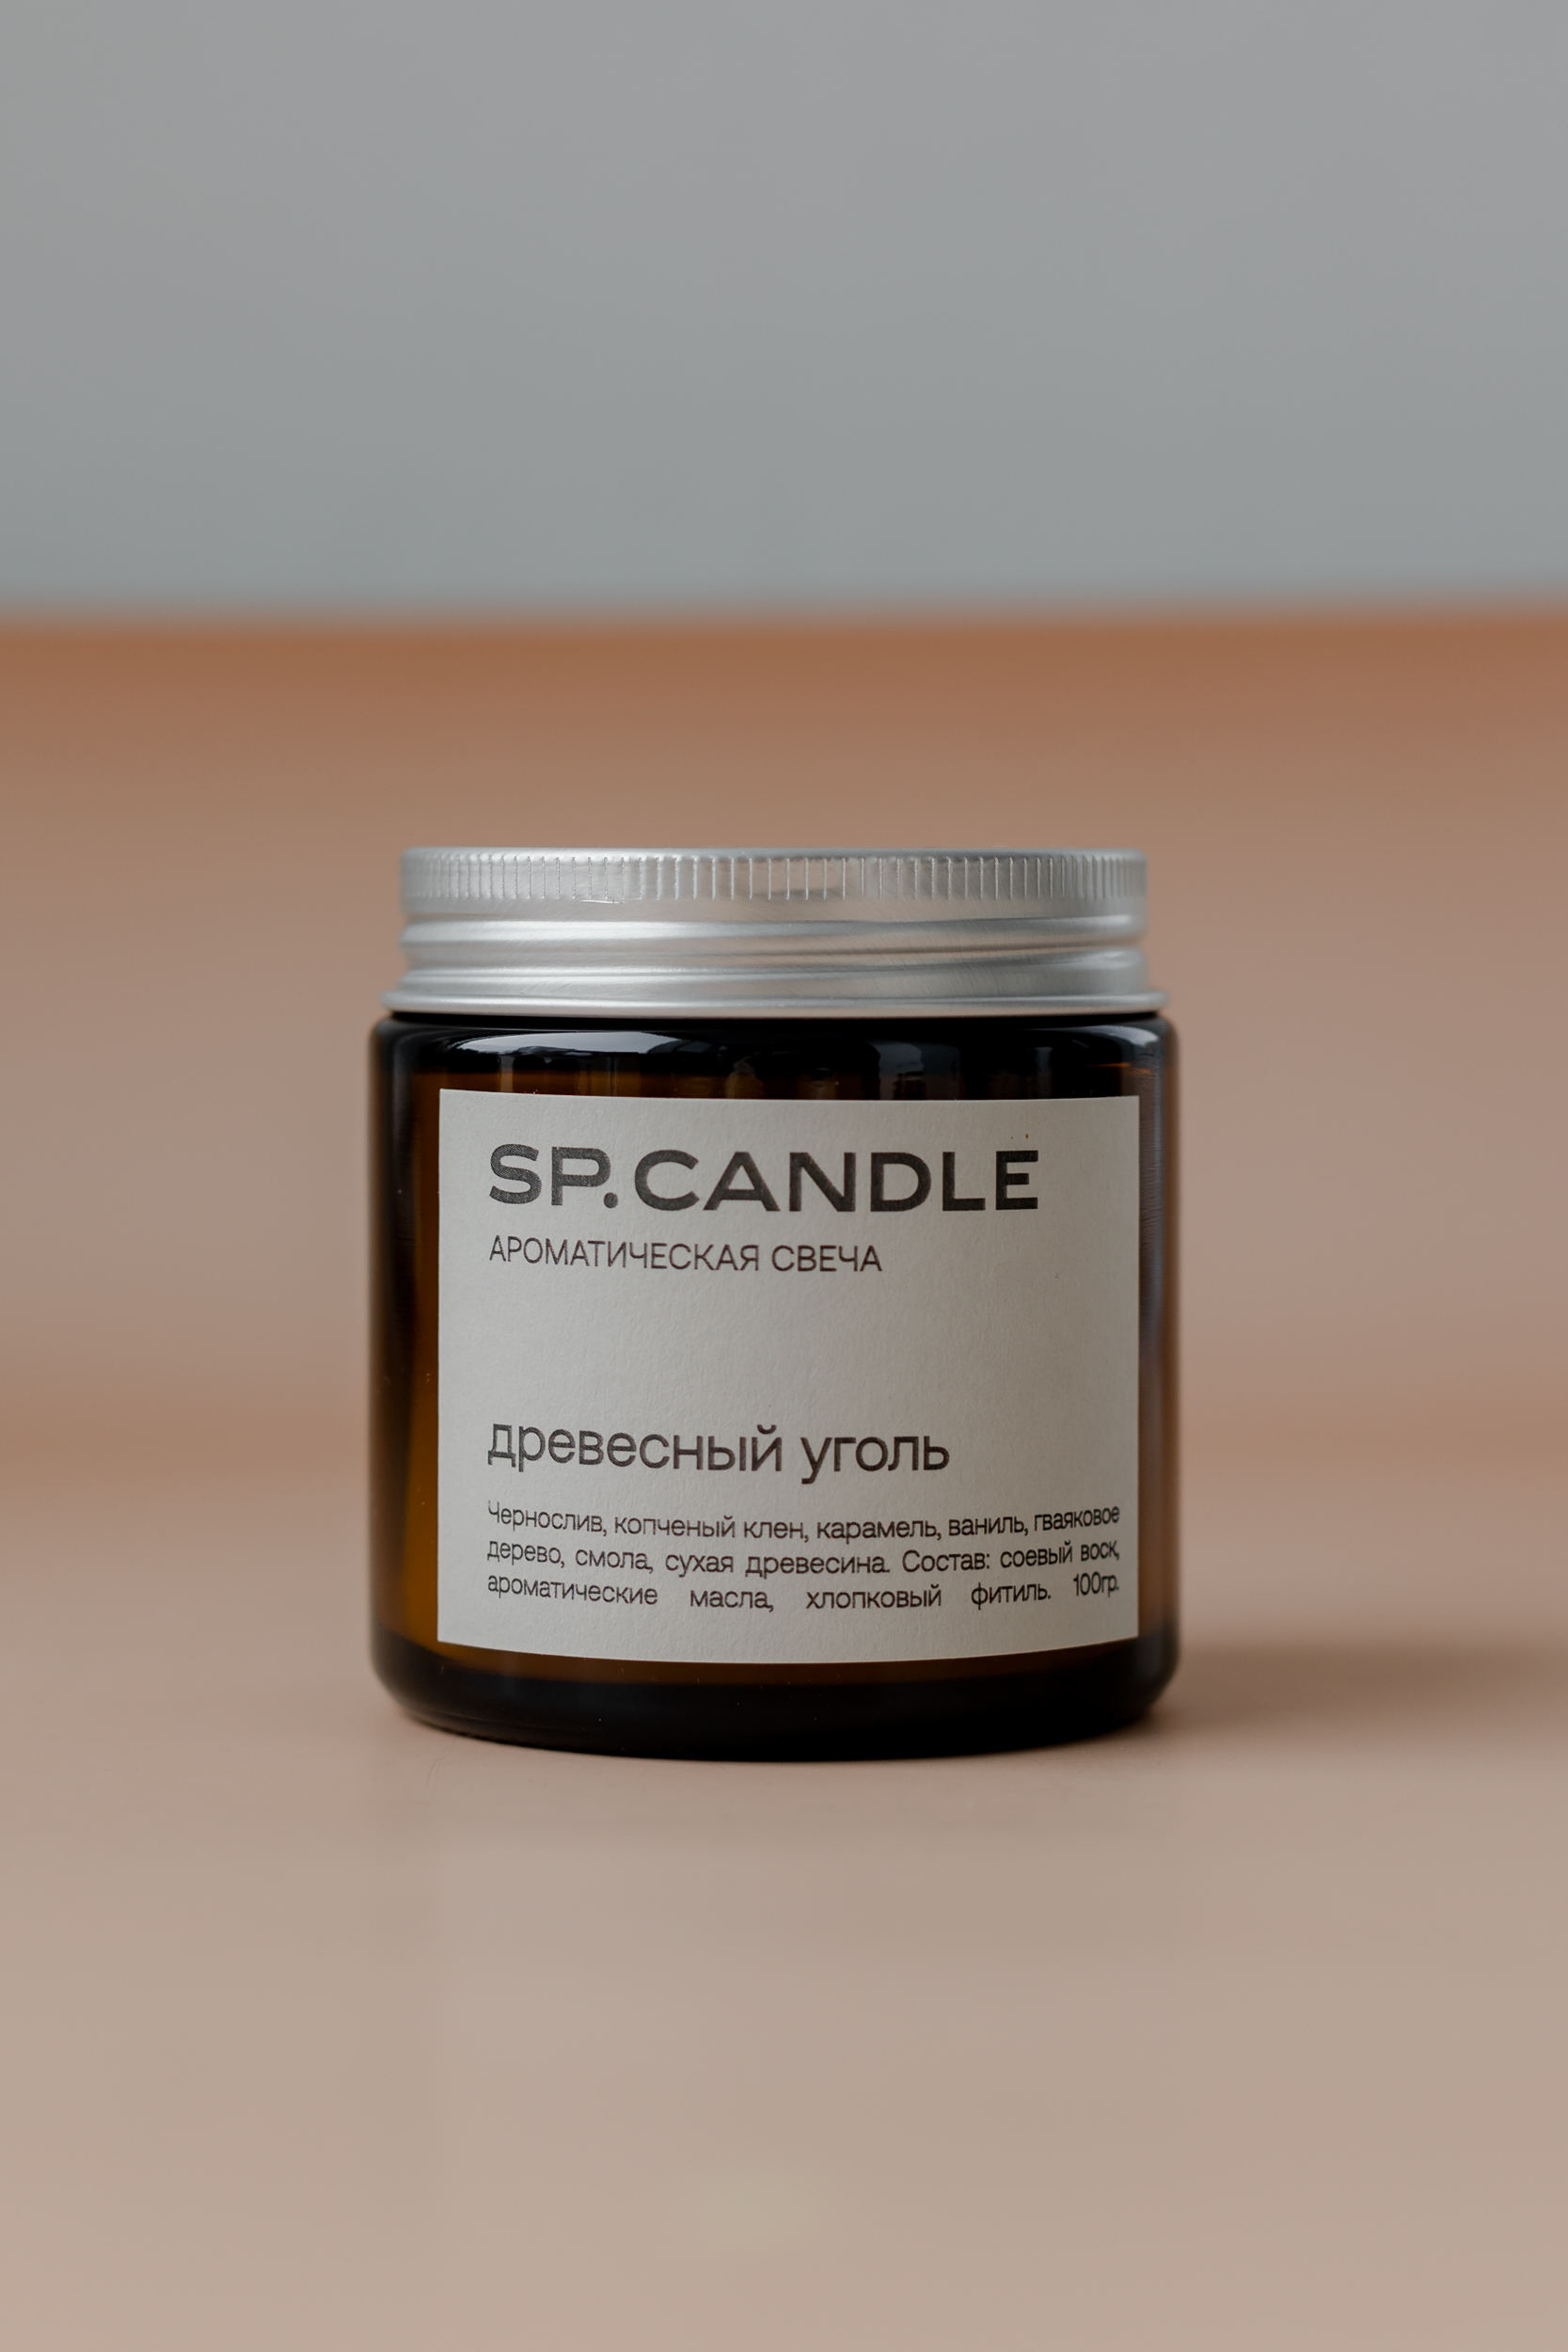 SP. CANDLE Ароматическая свеча Древесный уголь, 100г